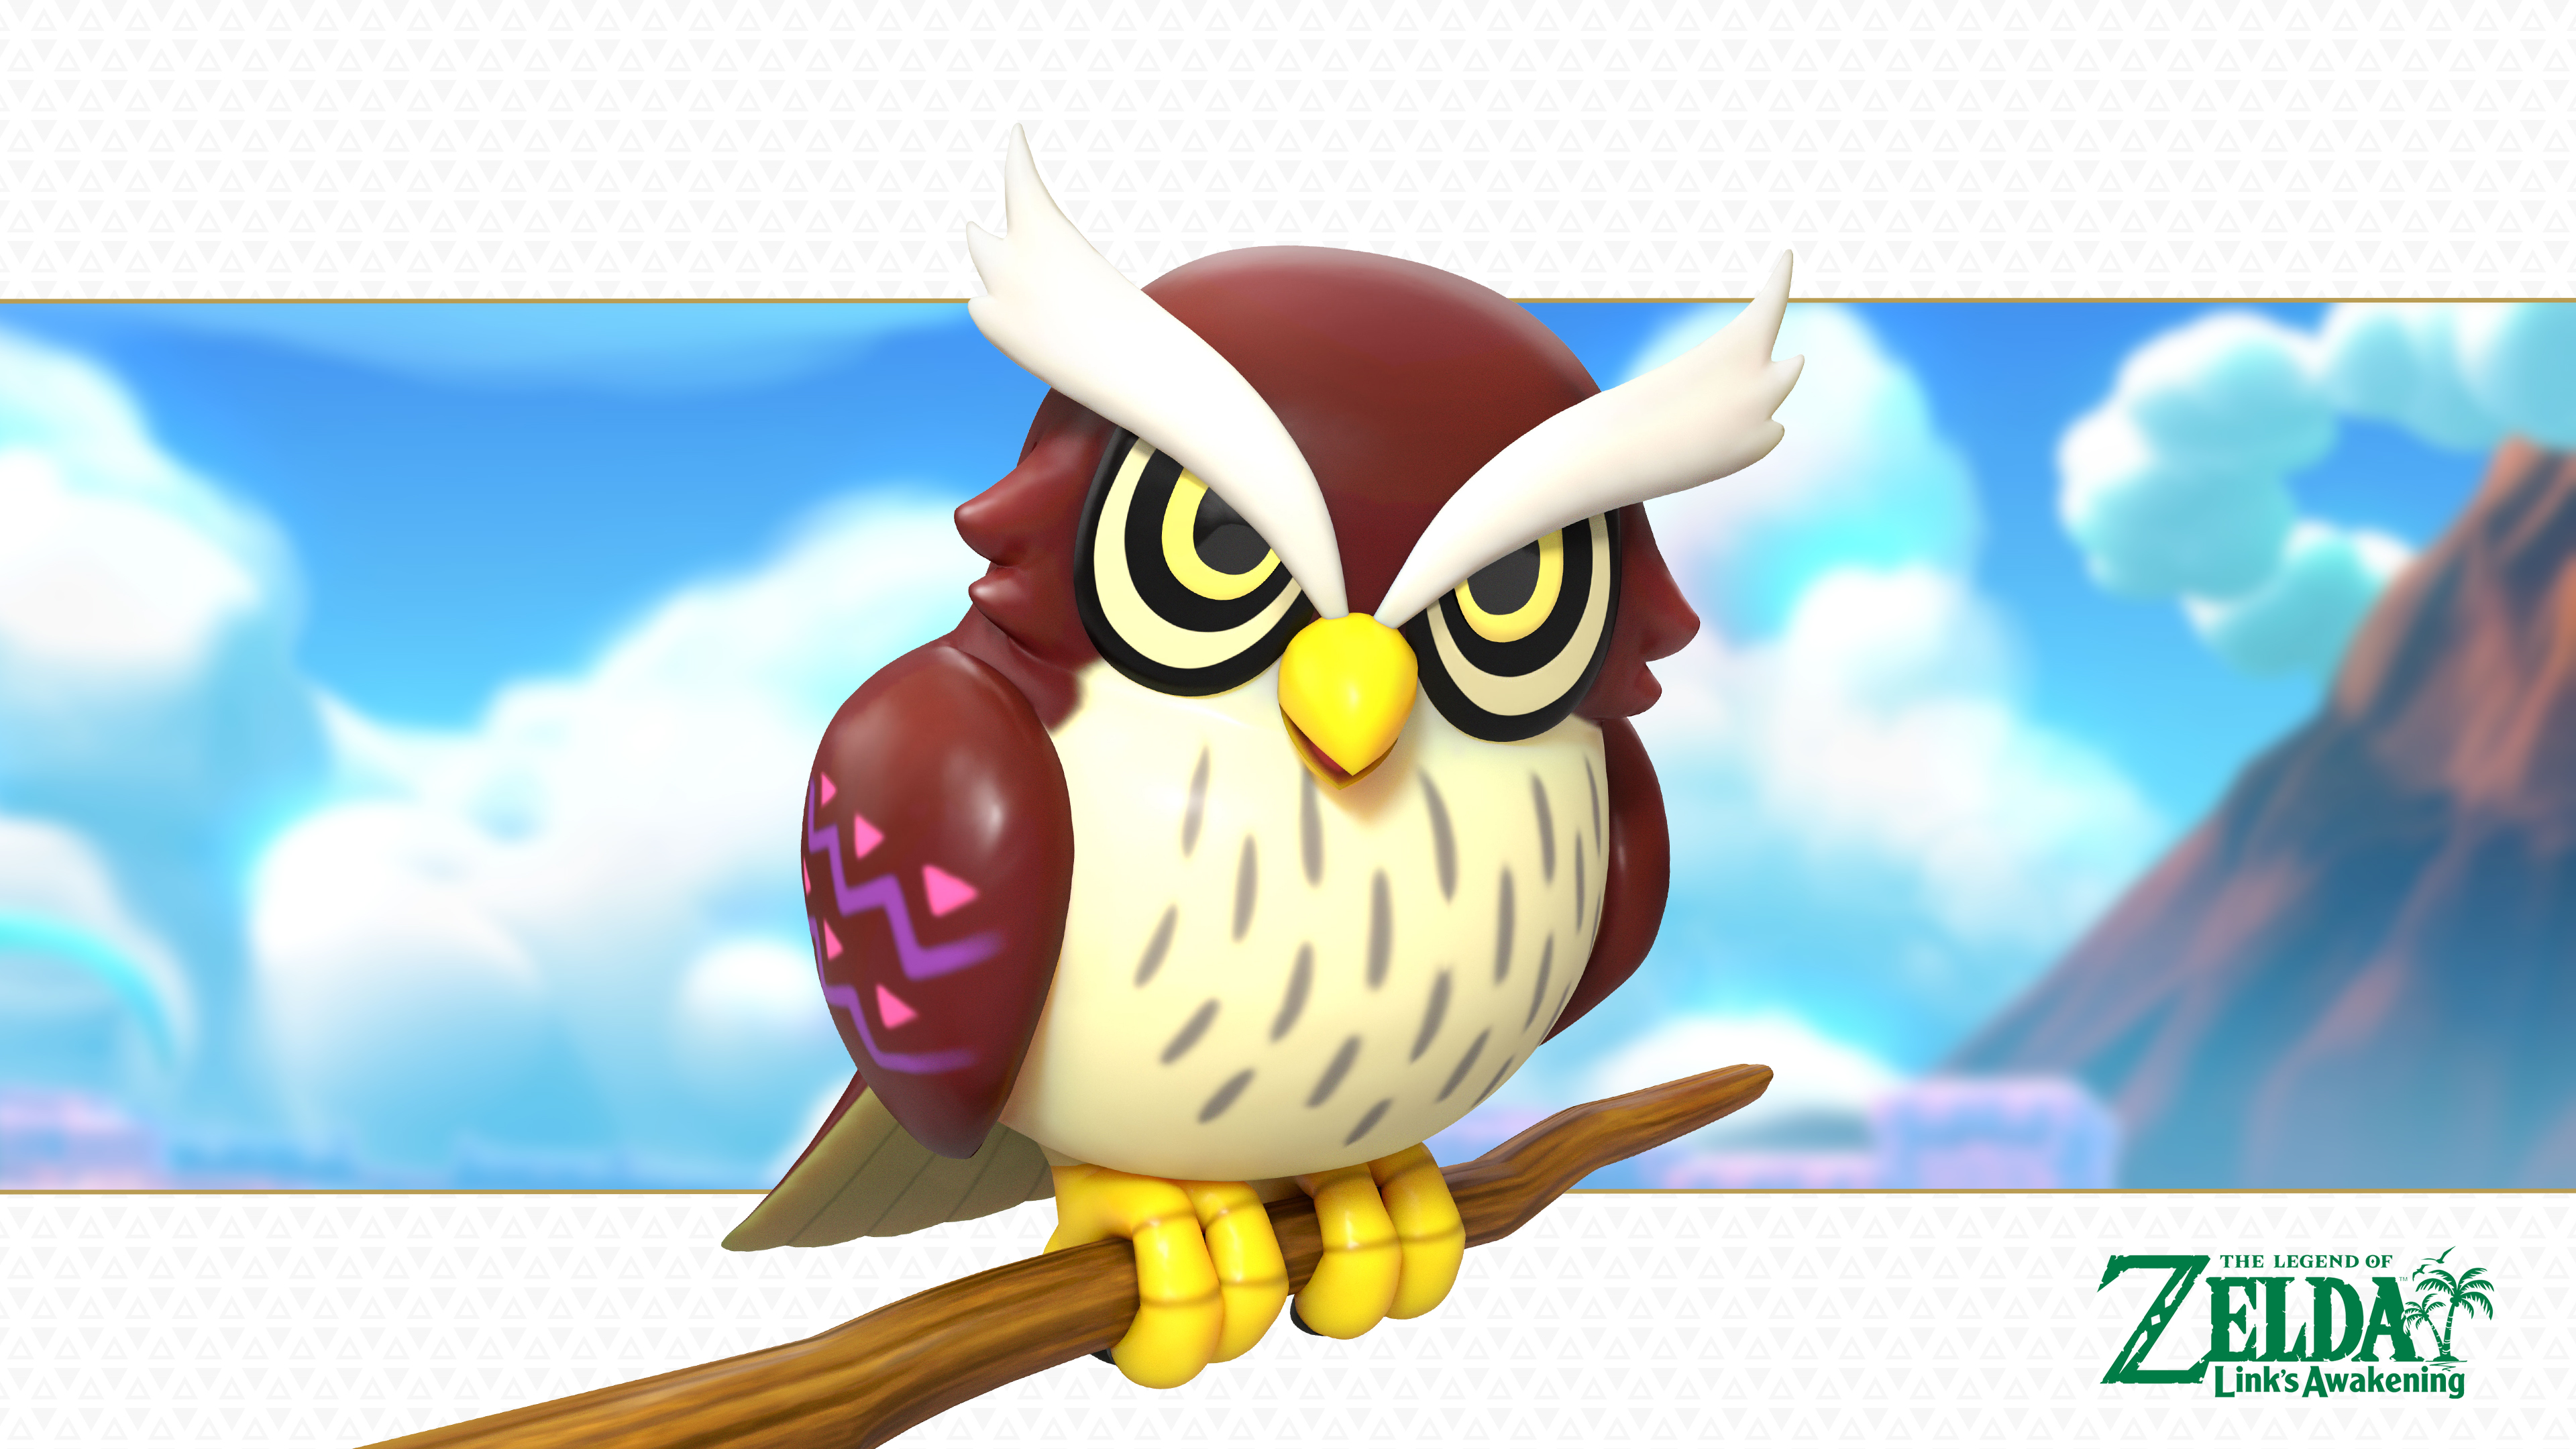 Zelda Link's Awakening Owl - HD Wallpaper 